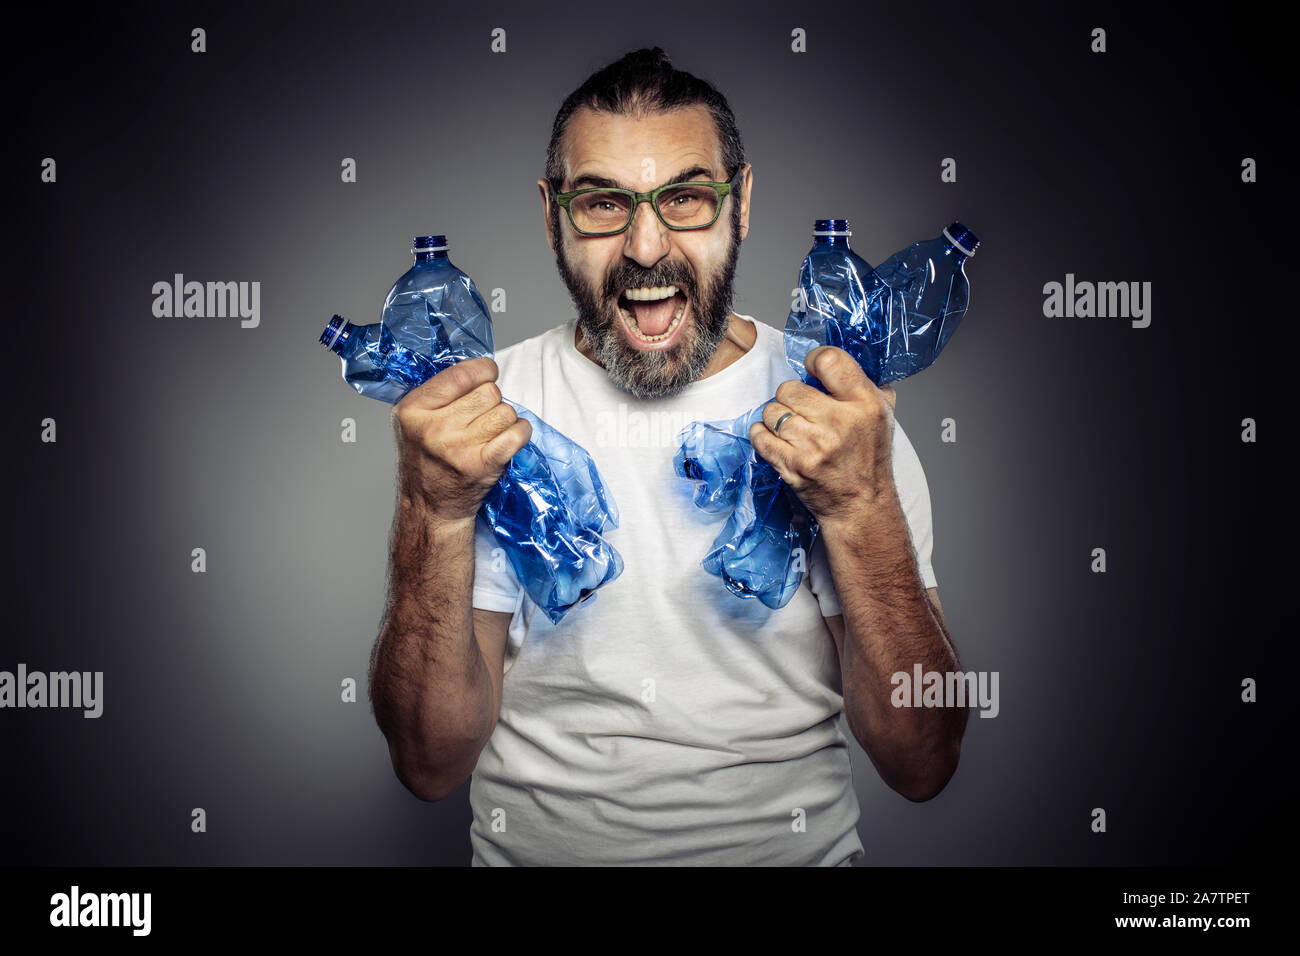 Retrato de estudio de un hombre con barba y gafas que está sosteniendo botellas vacías de plástico en sus manos. Concepto de reciclaje y uso excesivo de plástico Foto de stock